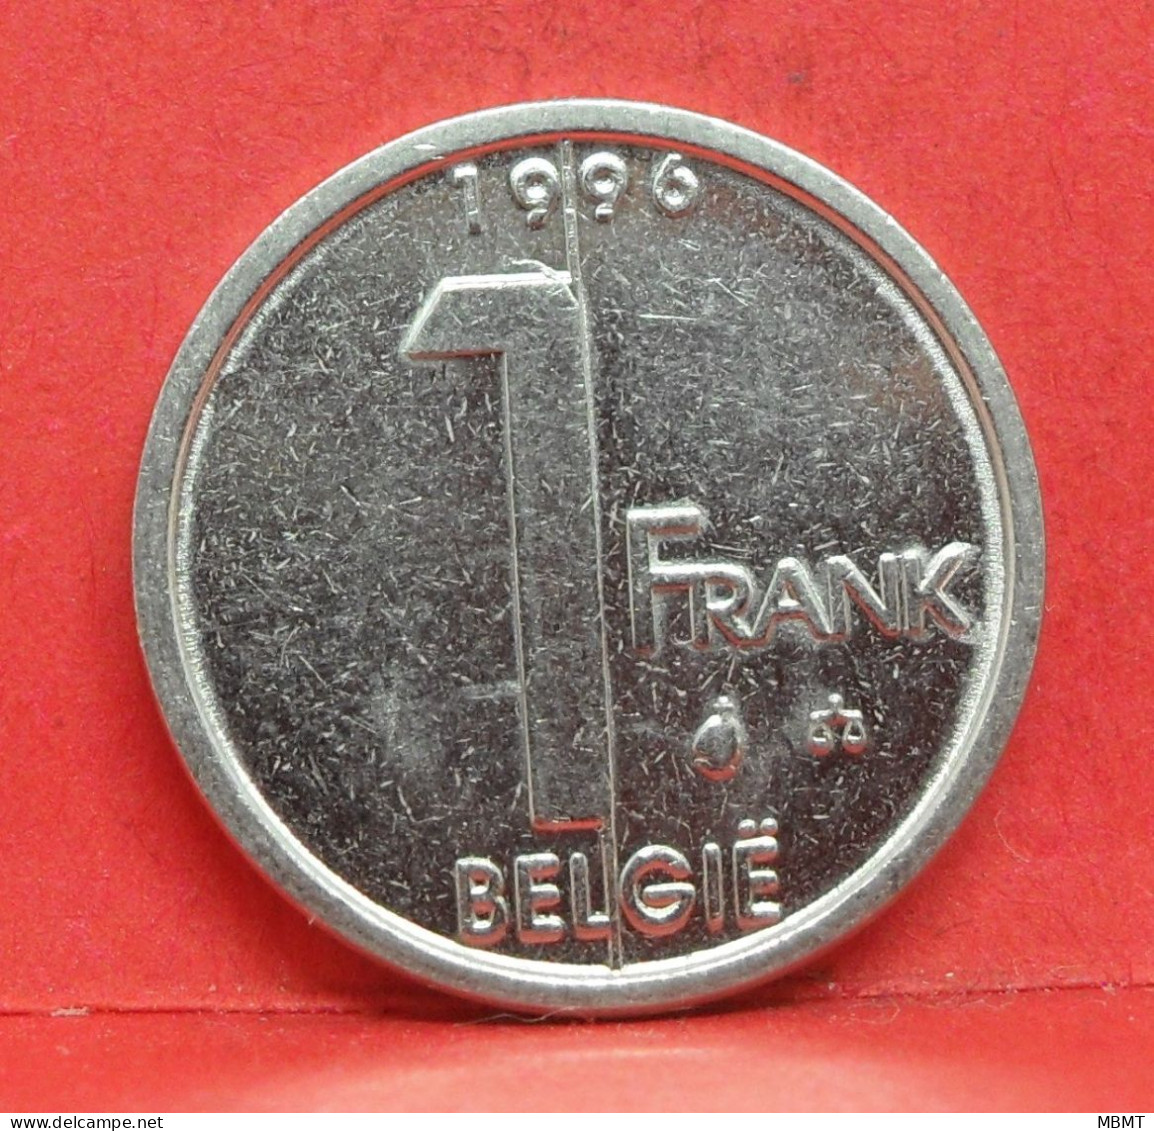 1 Frank 1996 - TTB - Pièce Monnaie Belgie - Article N°1970 - 1 Franc